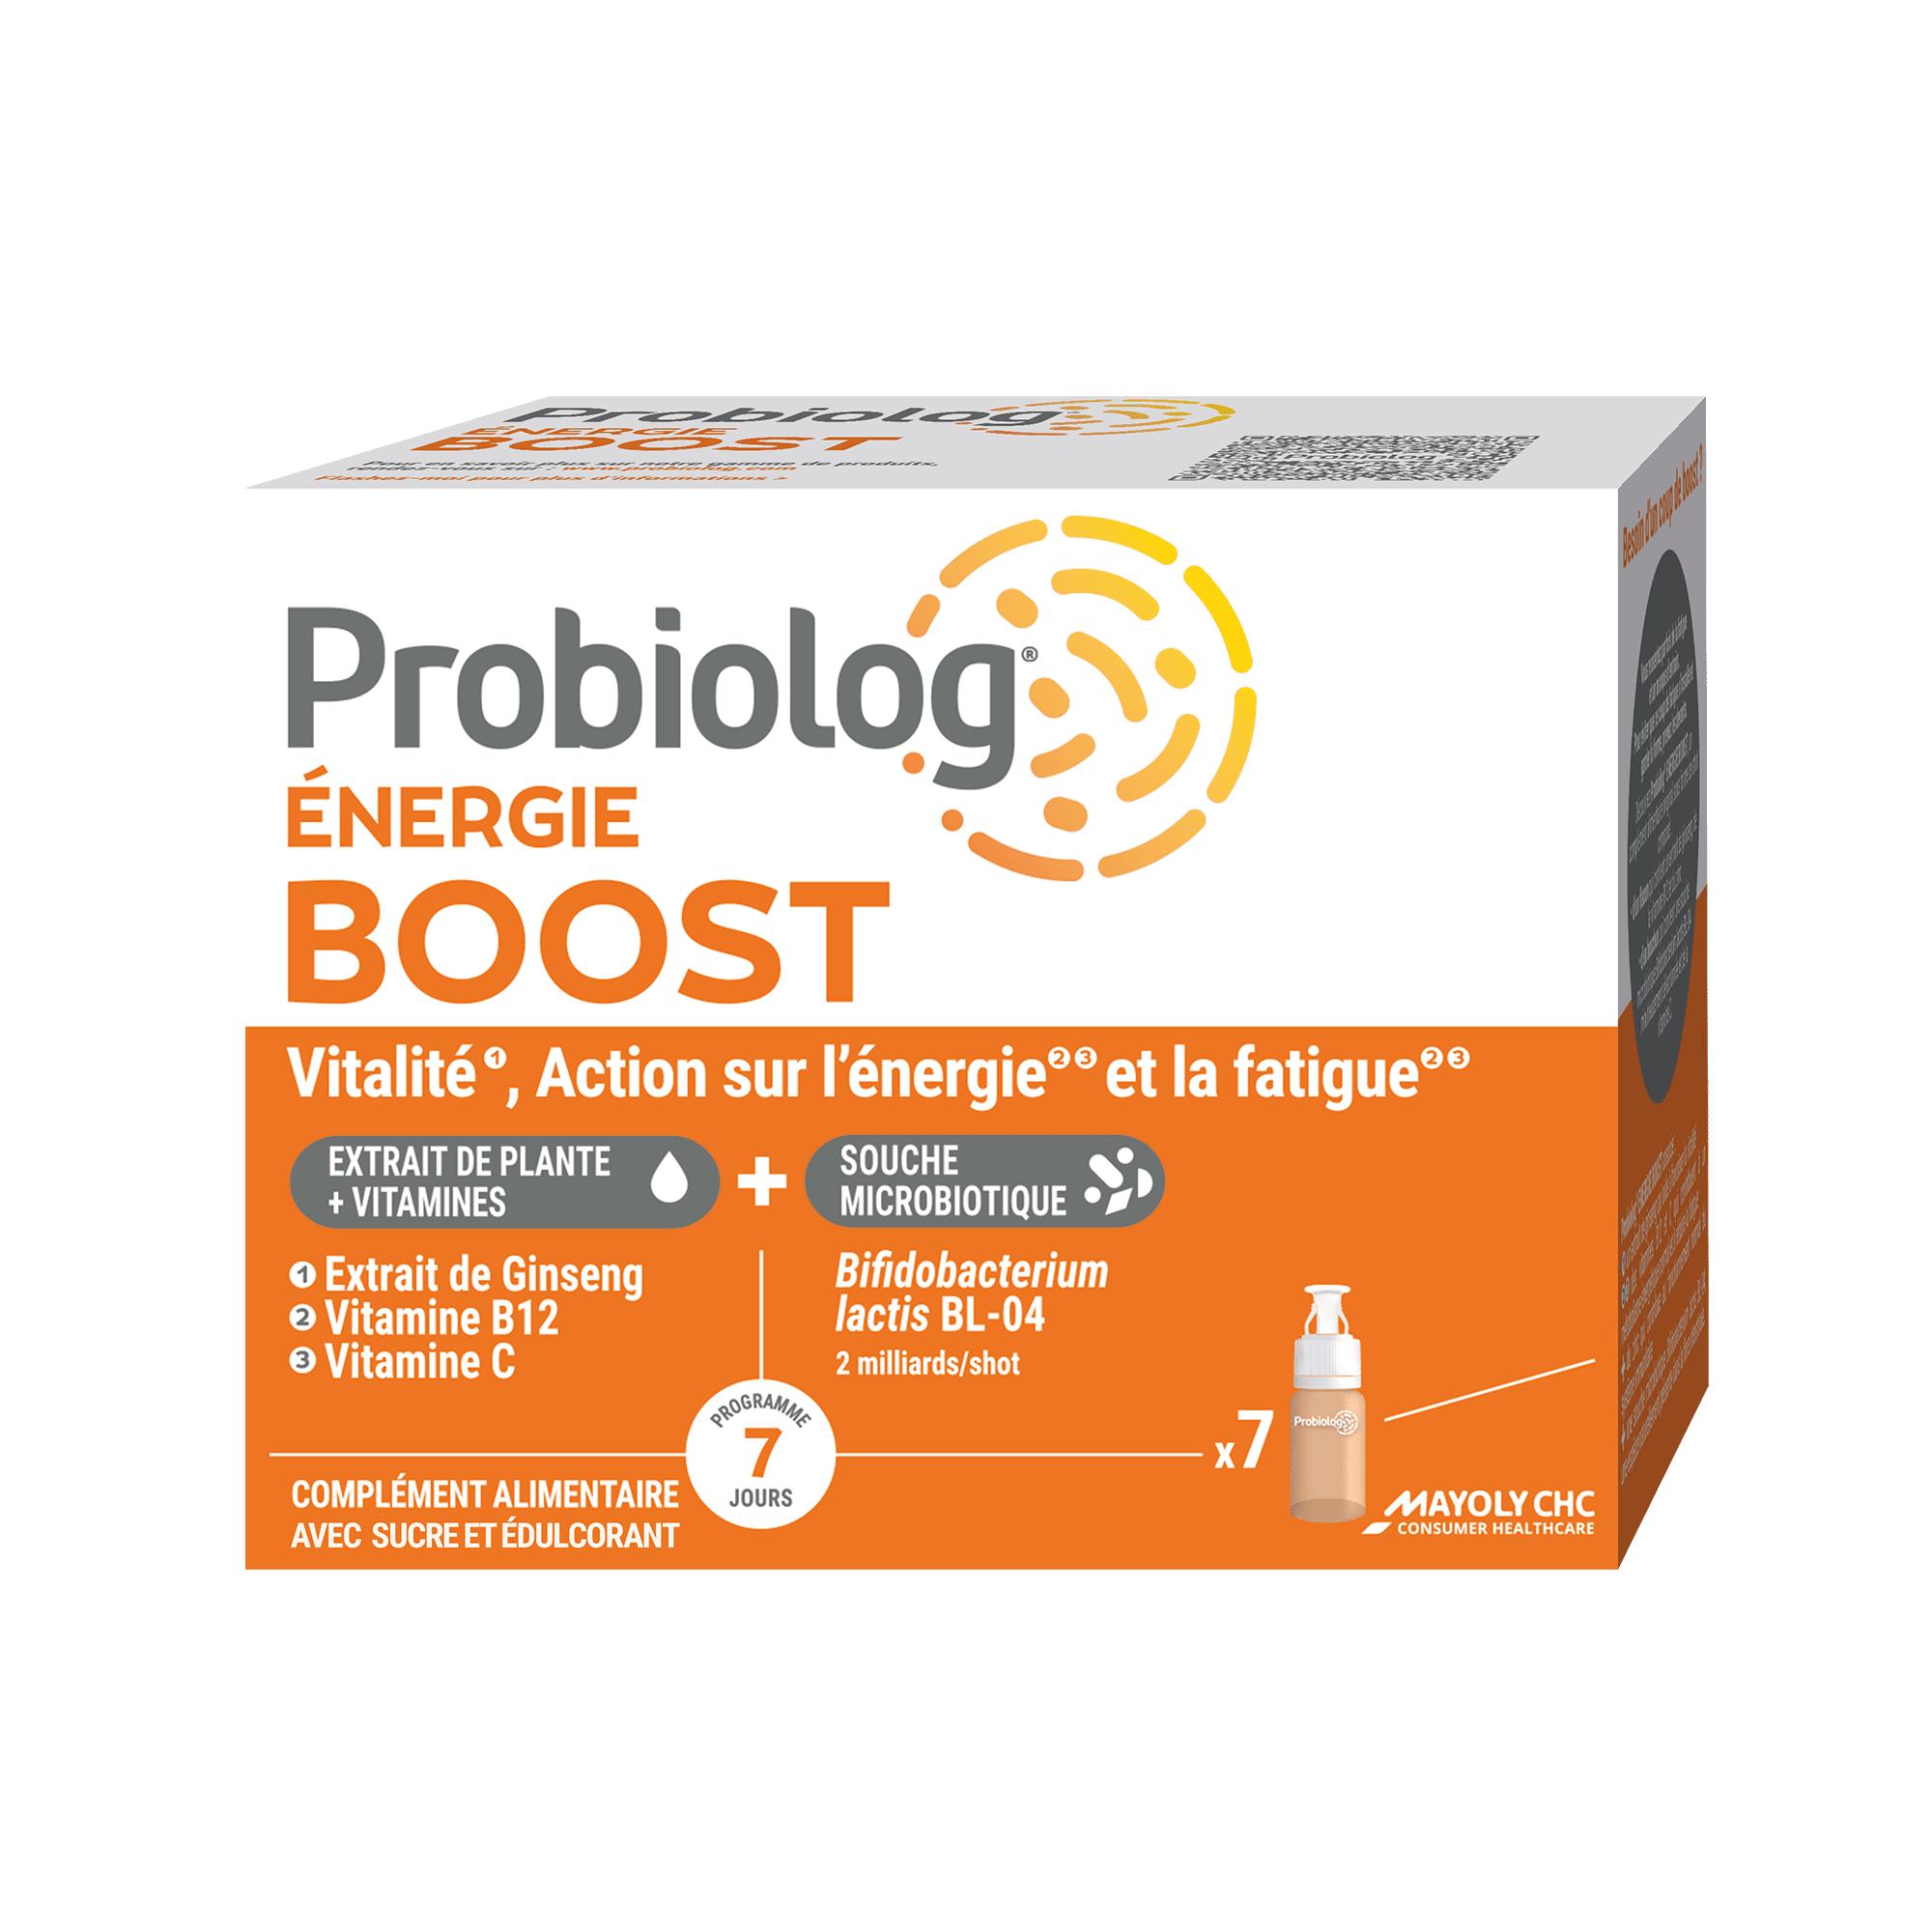 Packaging Probiolog ENERGIE BOOST 7 shots